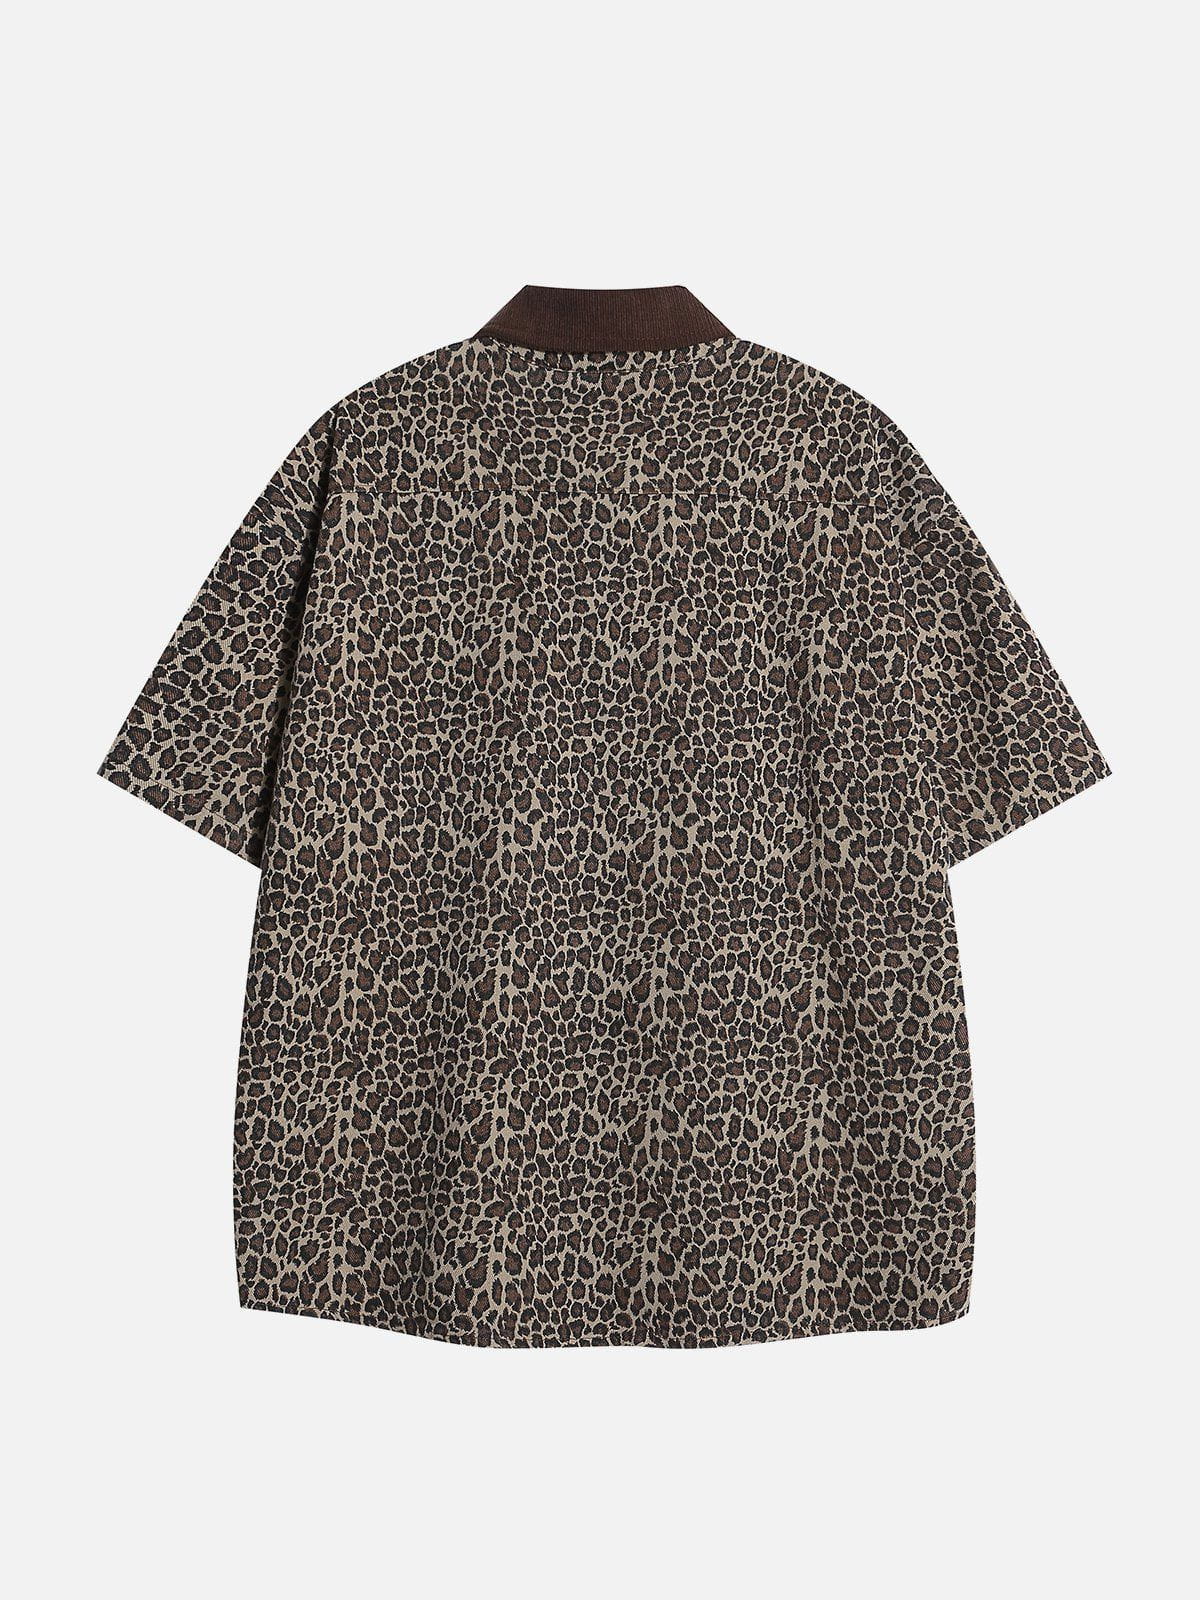 Aelfric Eden Light Leopard Print Short Sleeve Shirt